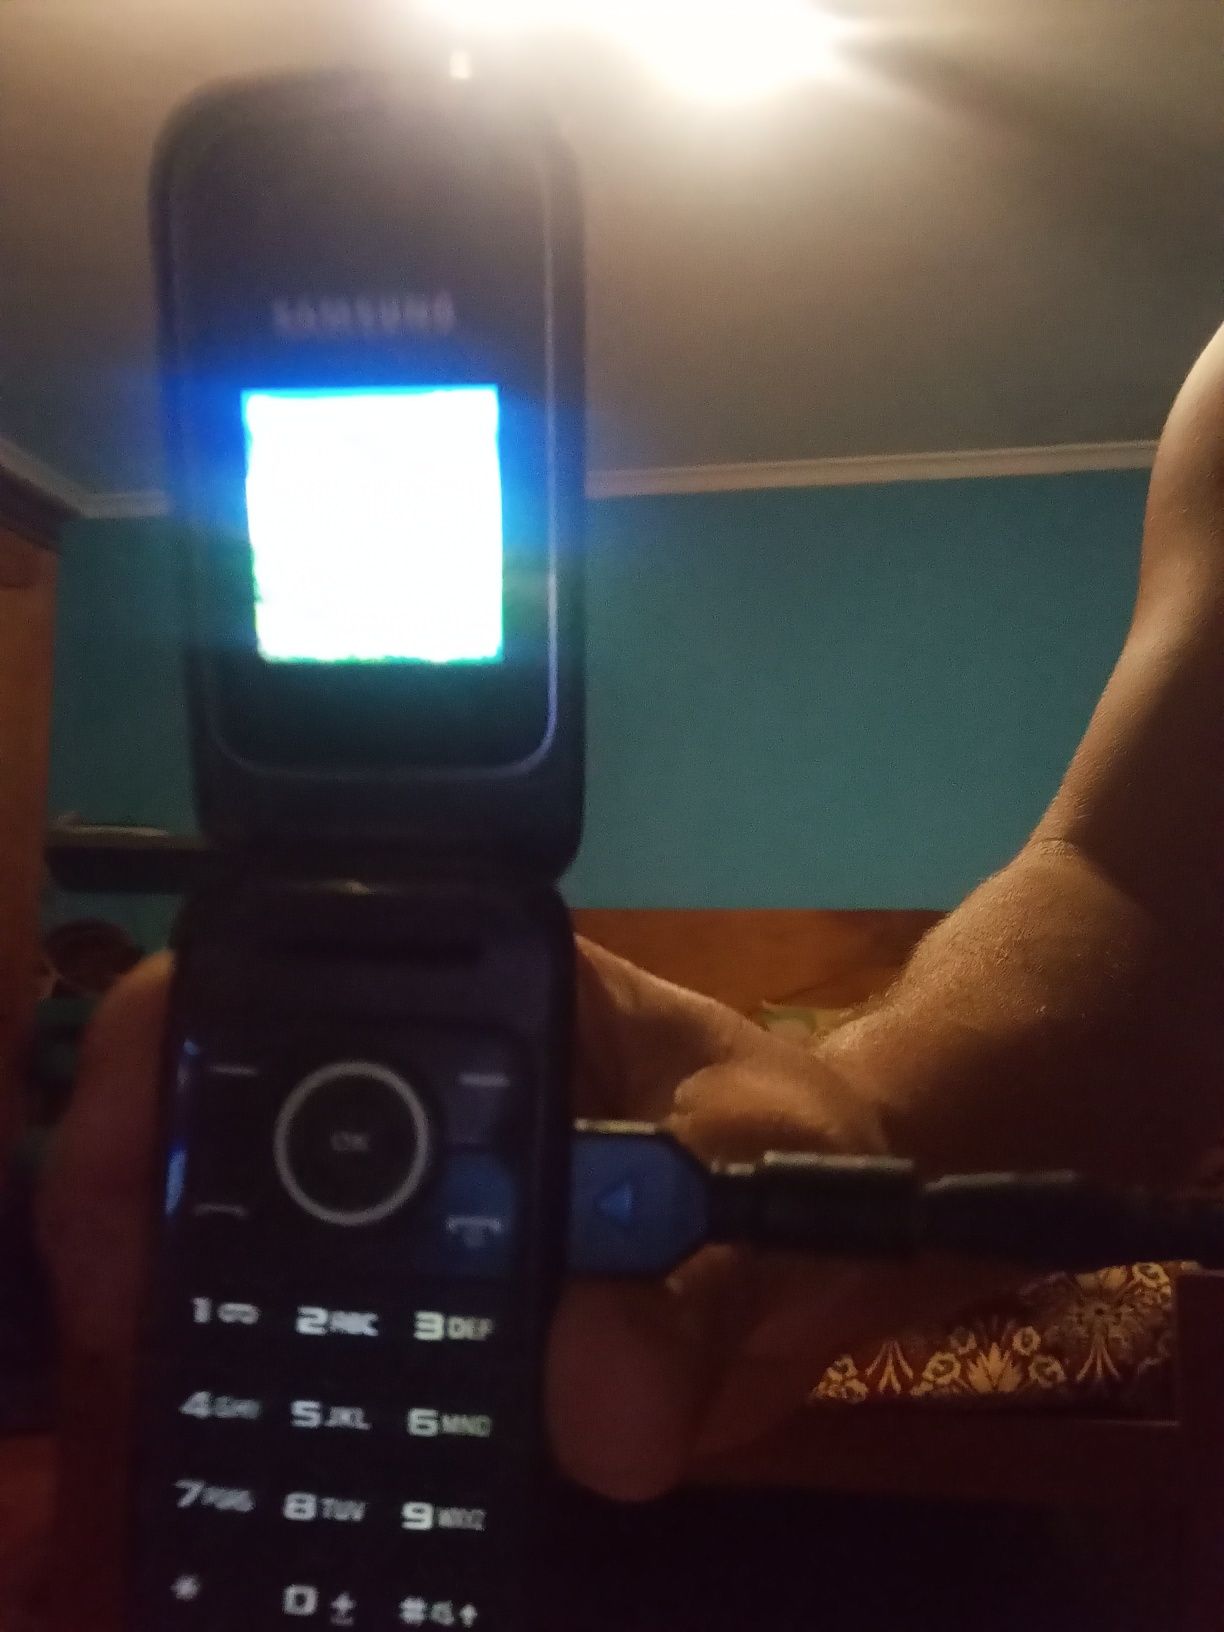 telemóvel dá marca Samsung modelo OTE1190